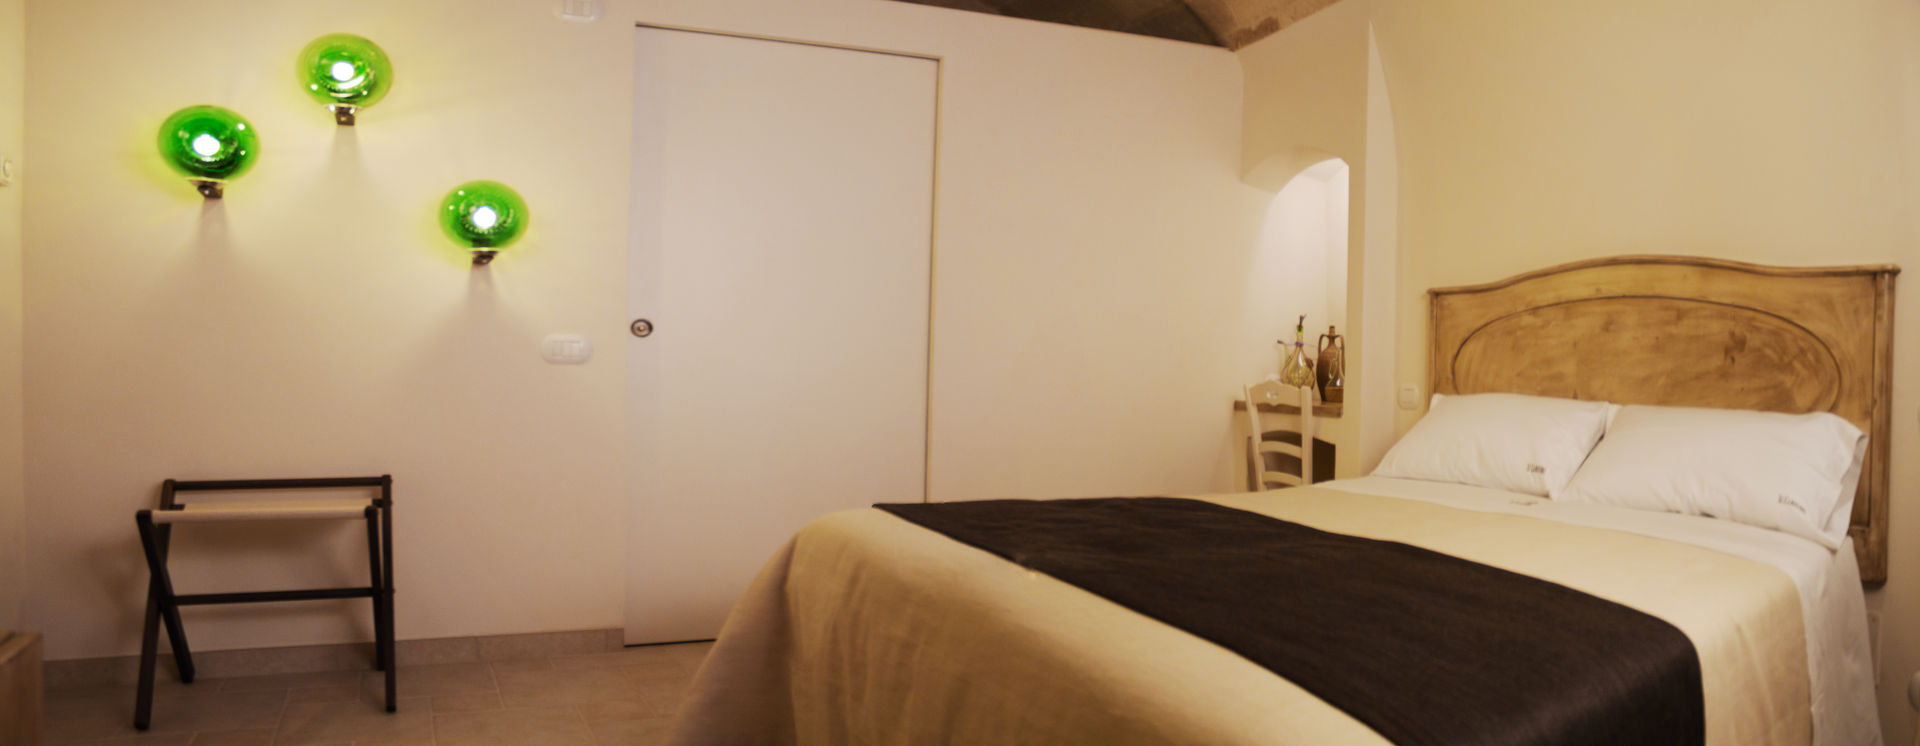 Il claustro_Albergo diffuso, B+P architetti B+P architetti Mediterranean style bedroom